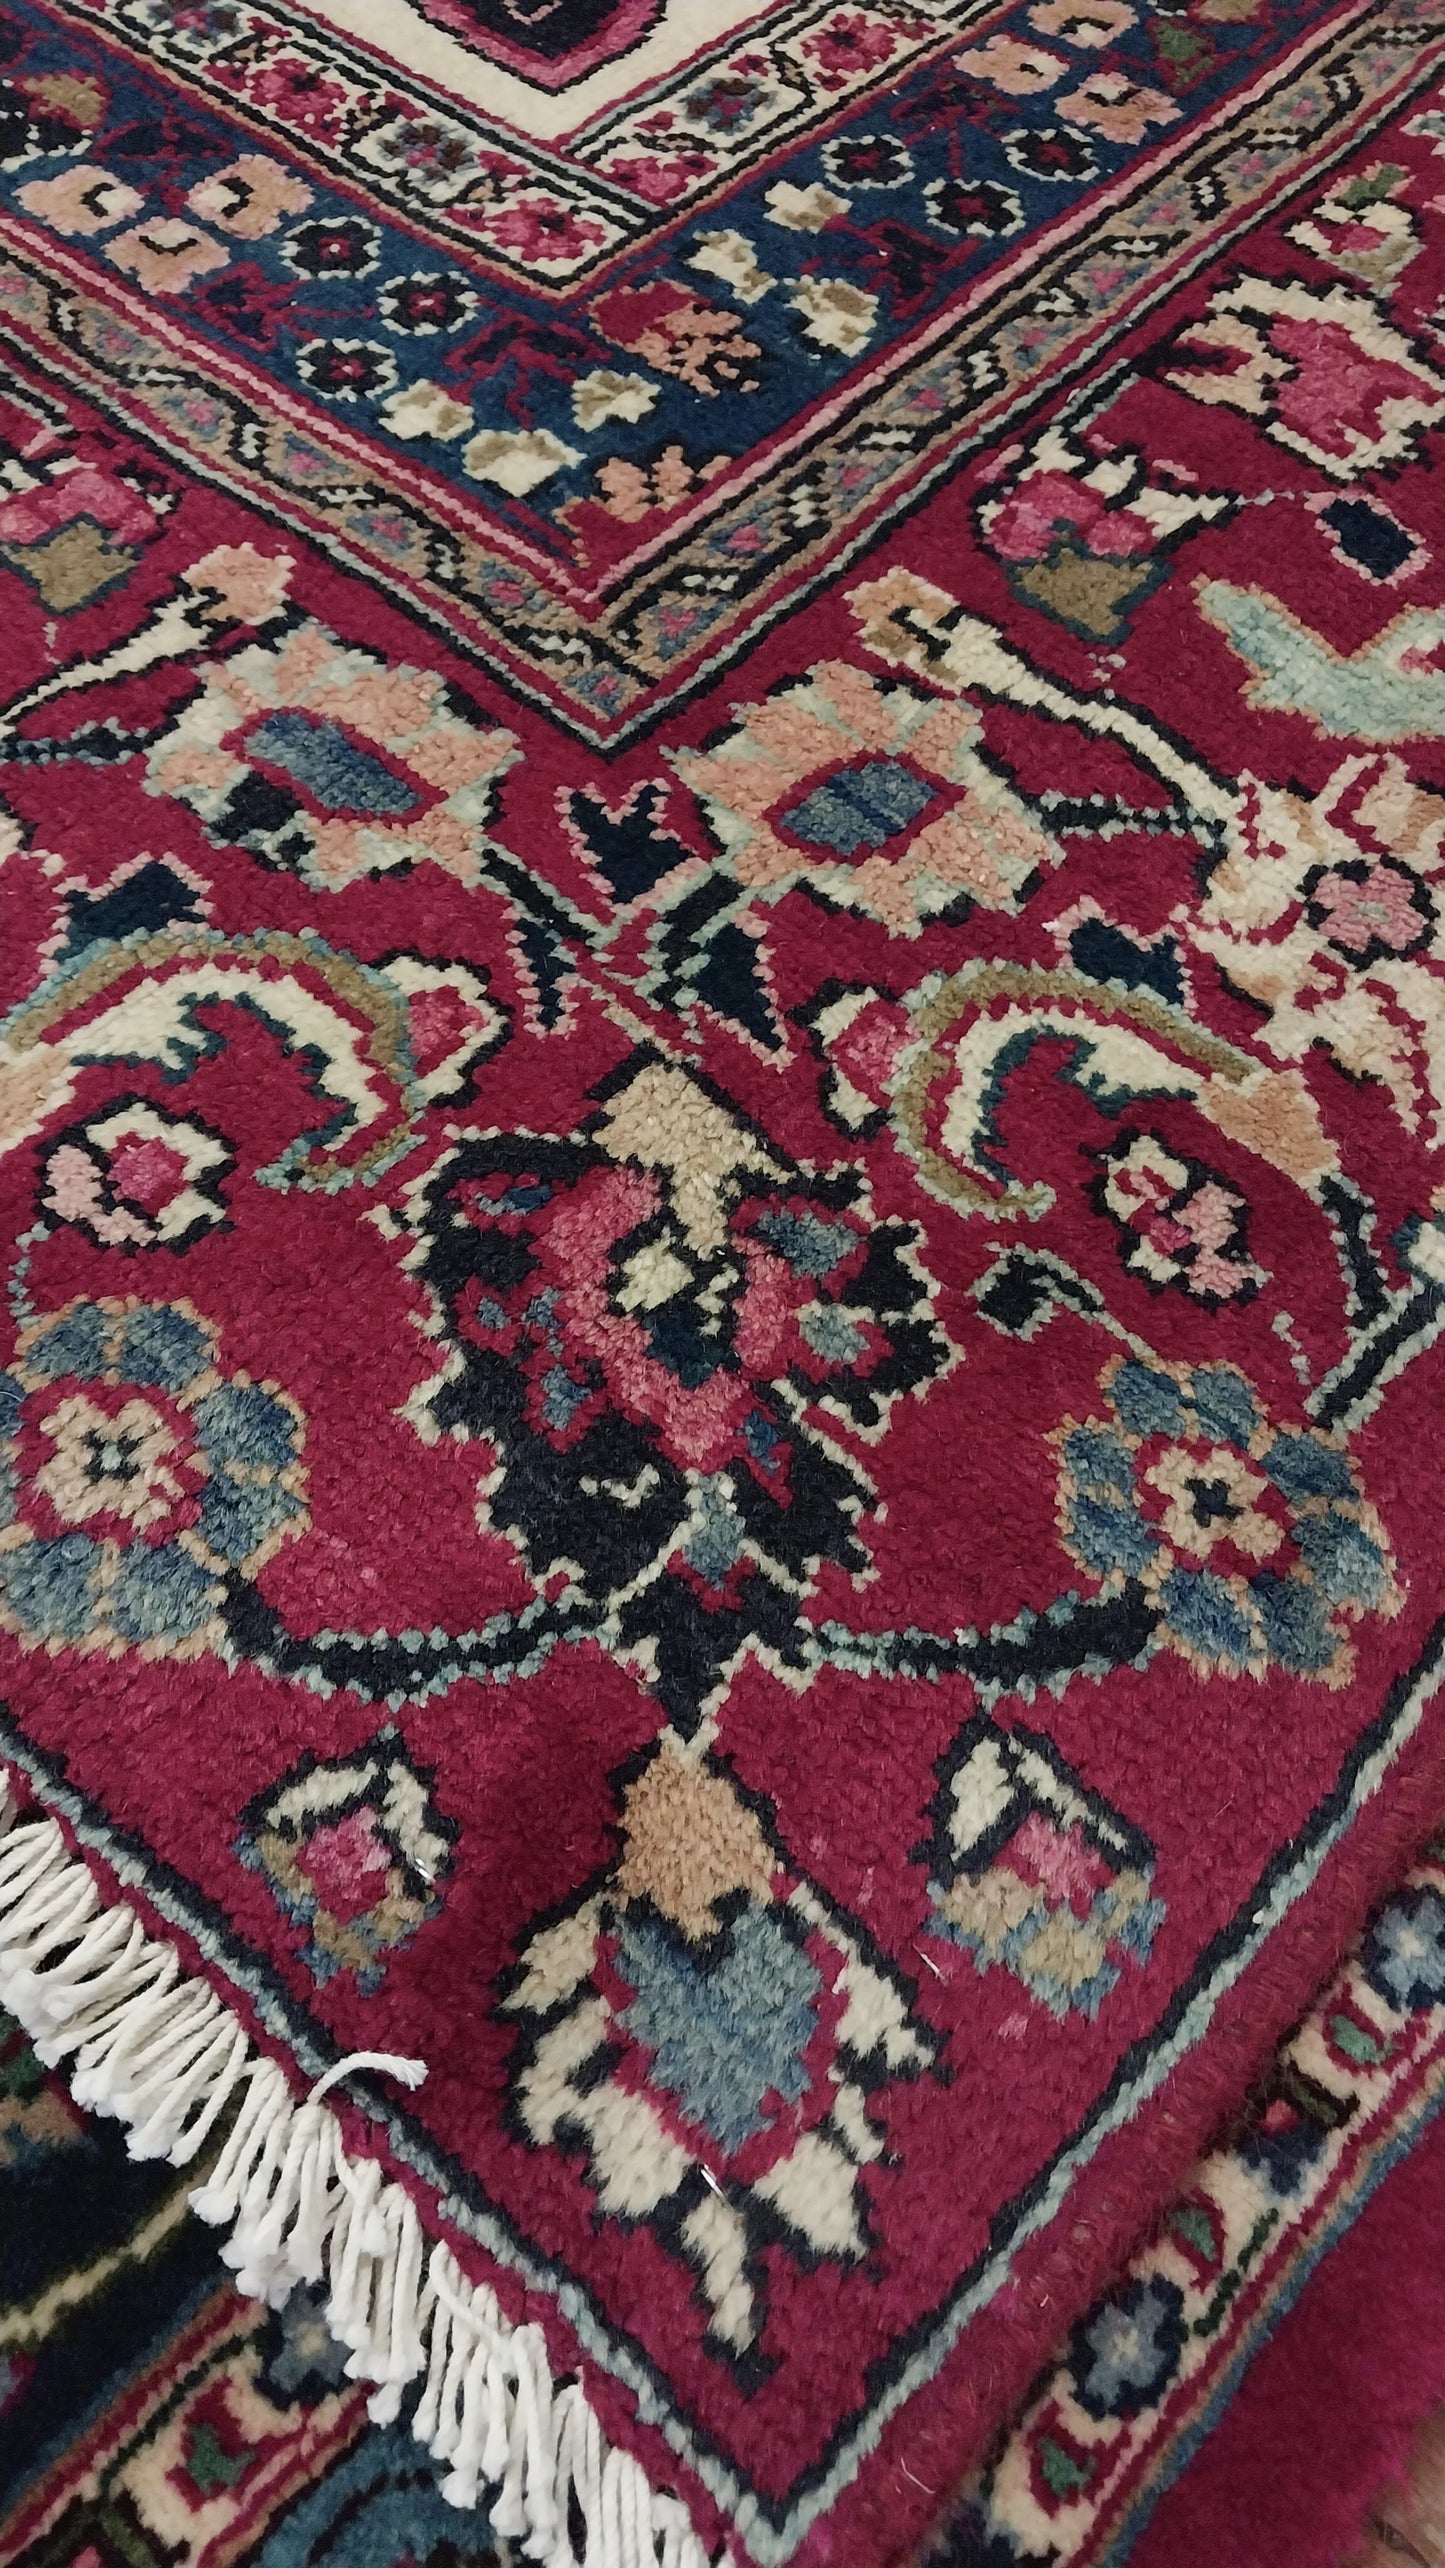 Persian carpet (355cm x 265cm)